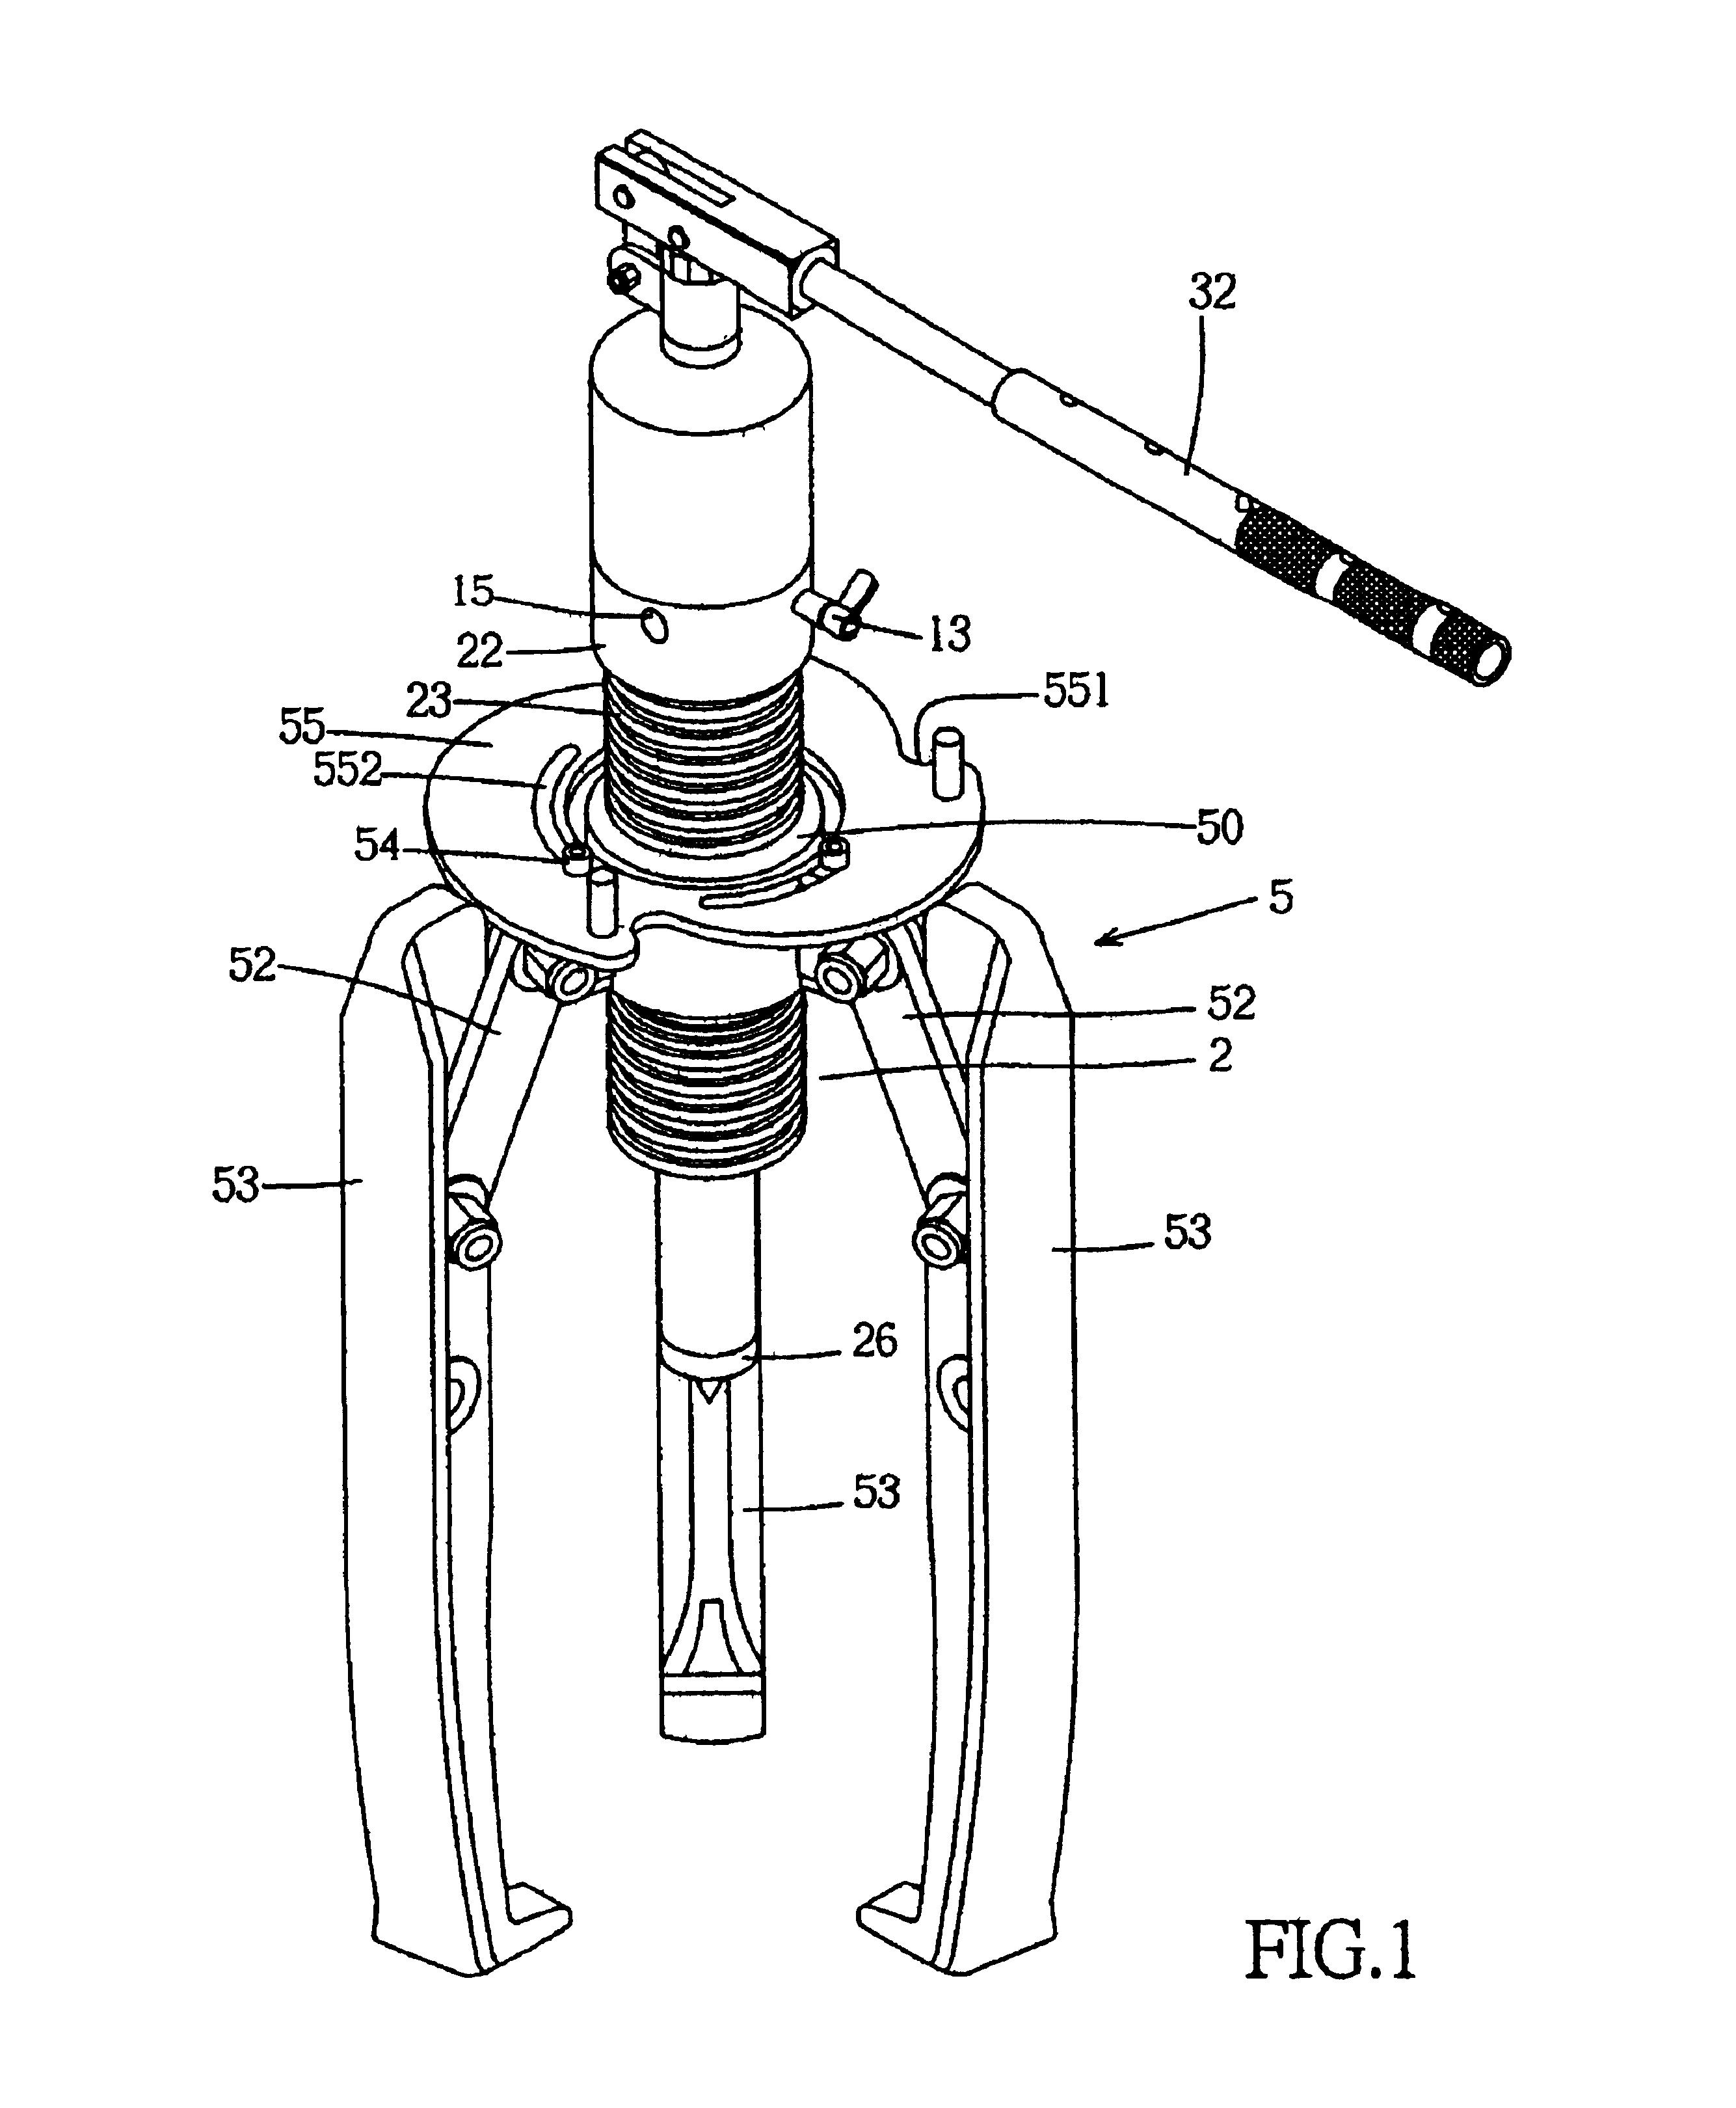 Hydraulic puller